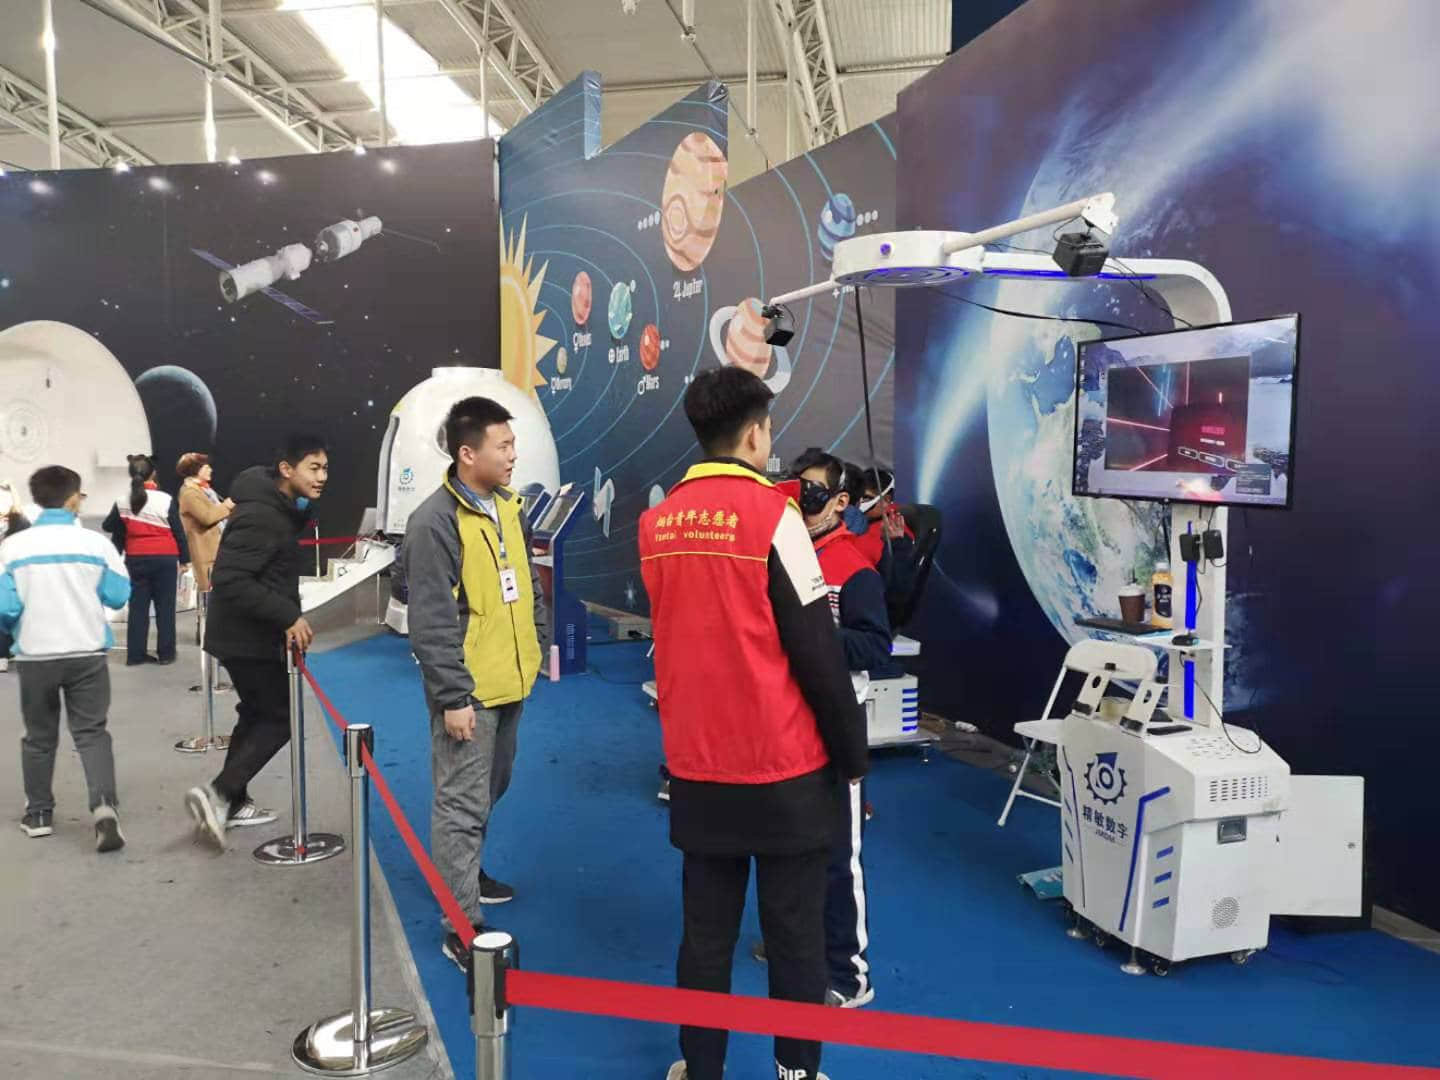 广州精敏银河幻影VR现代科技